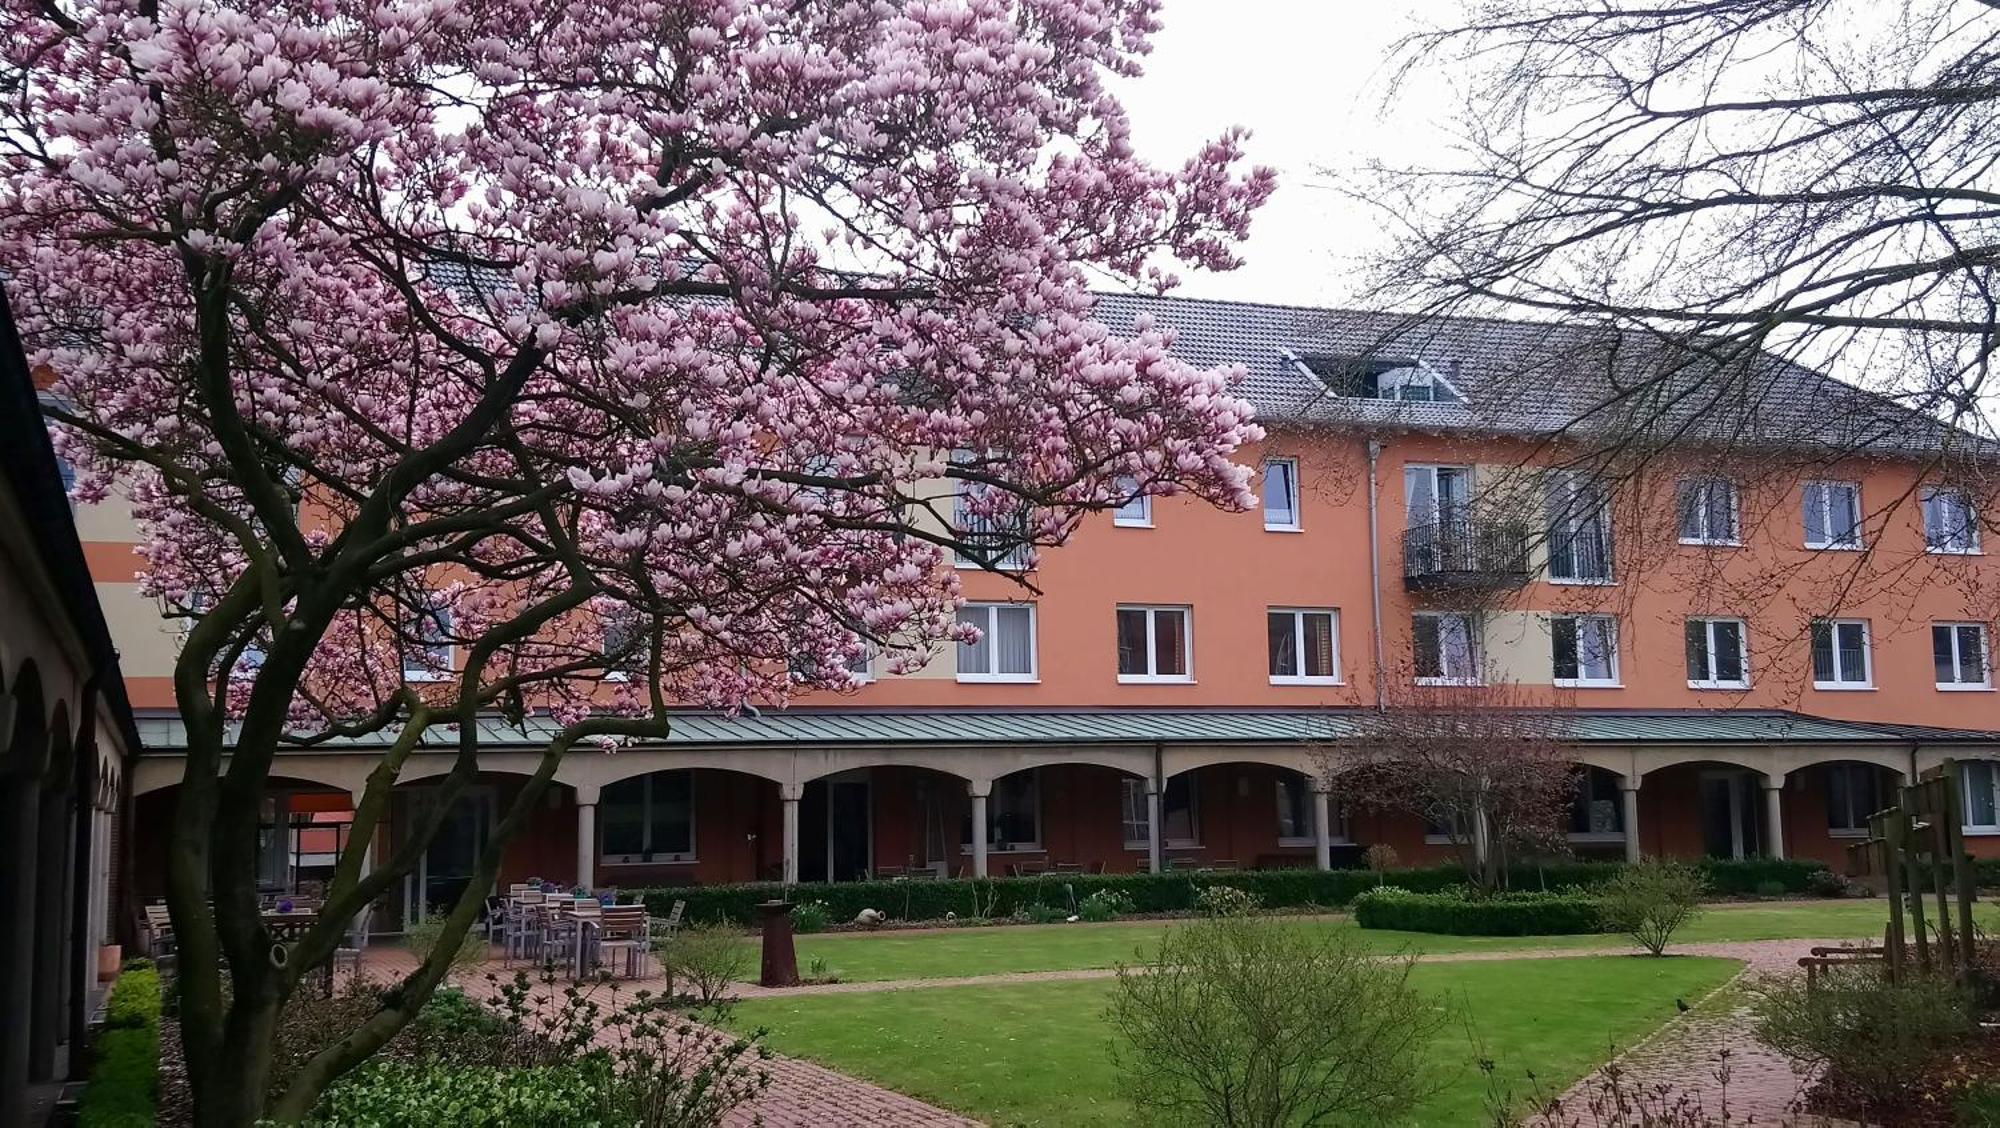 Hotel Klostergarten Kevelaer Esterno foto